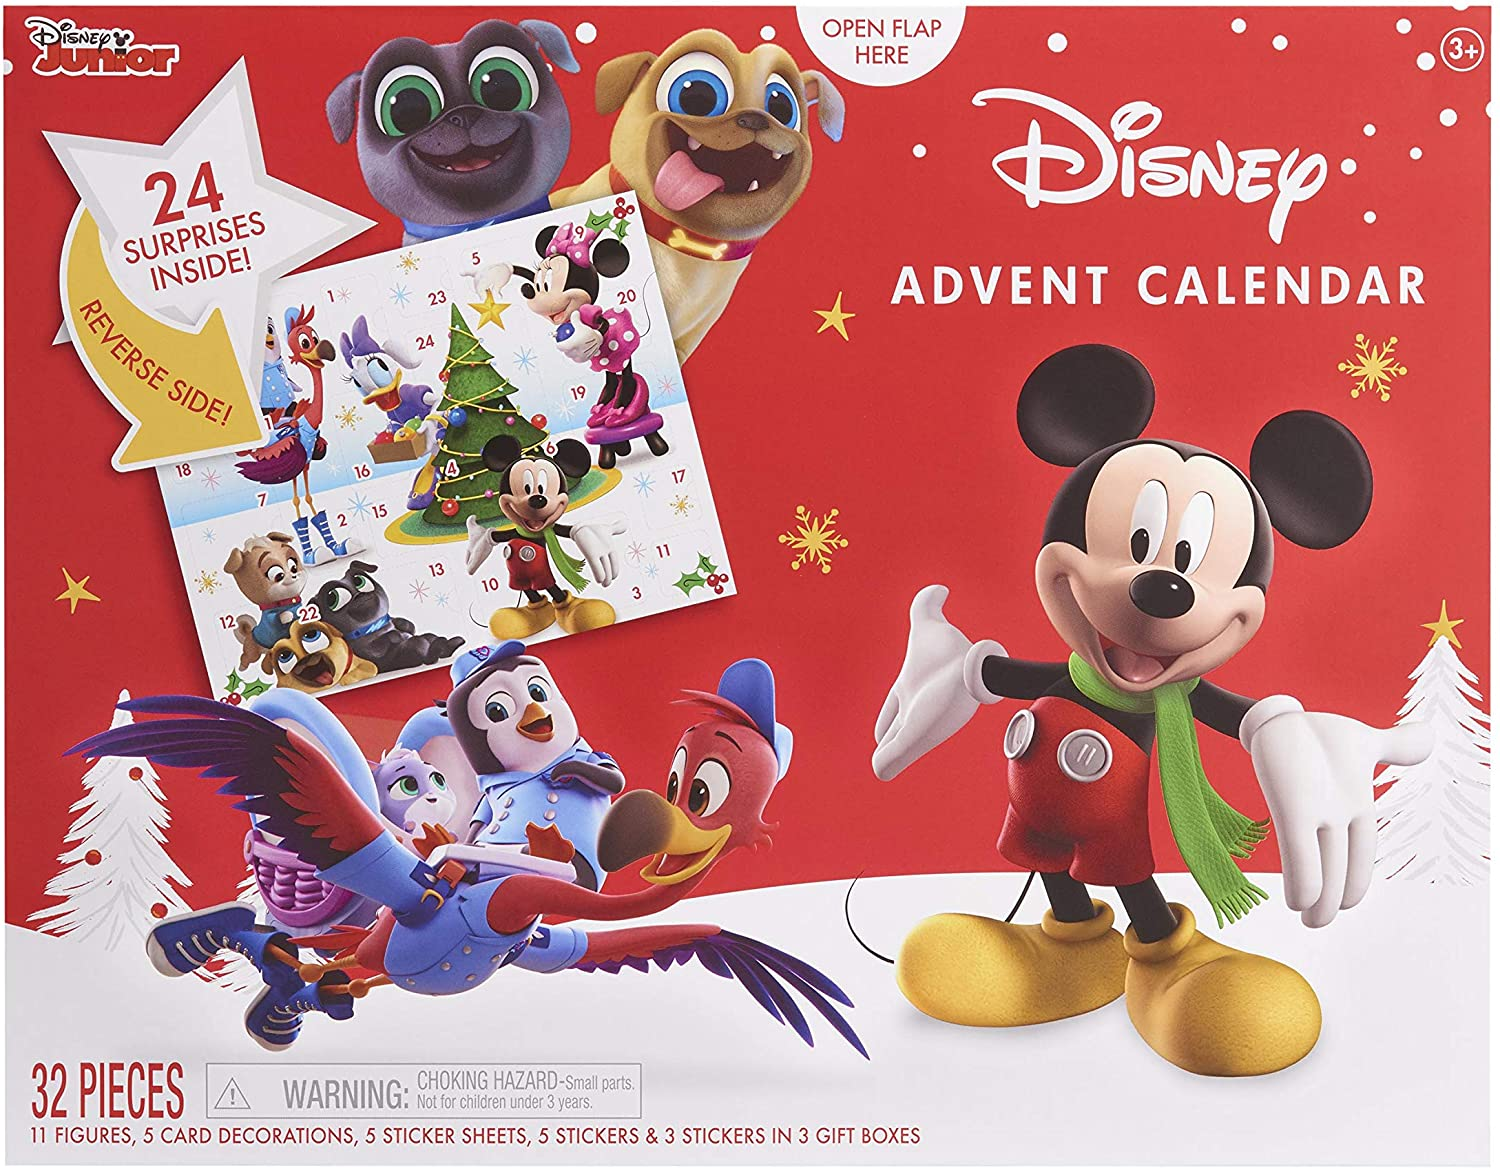 2020 Disney Junior Advent Calendar Available Now! Hello Subscription